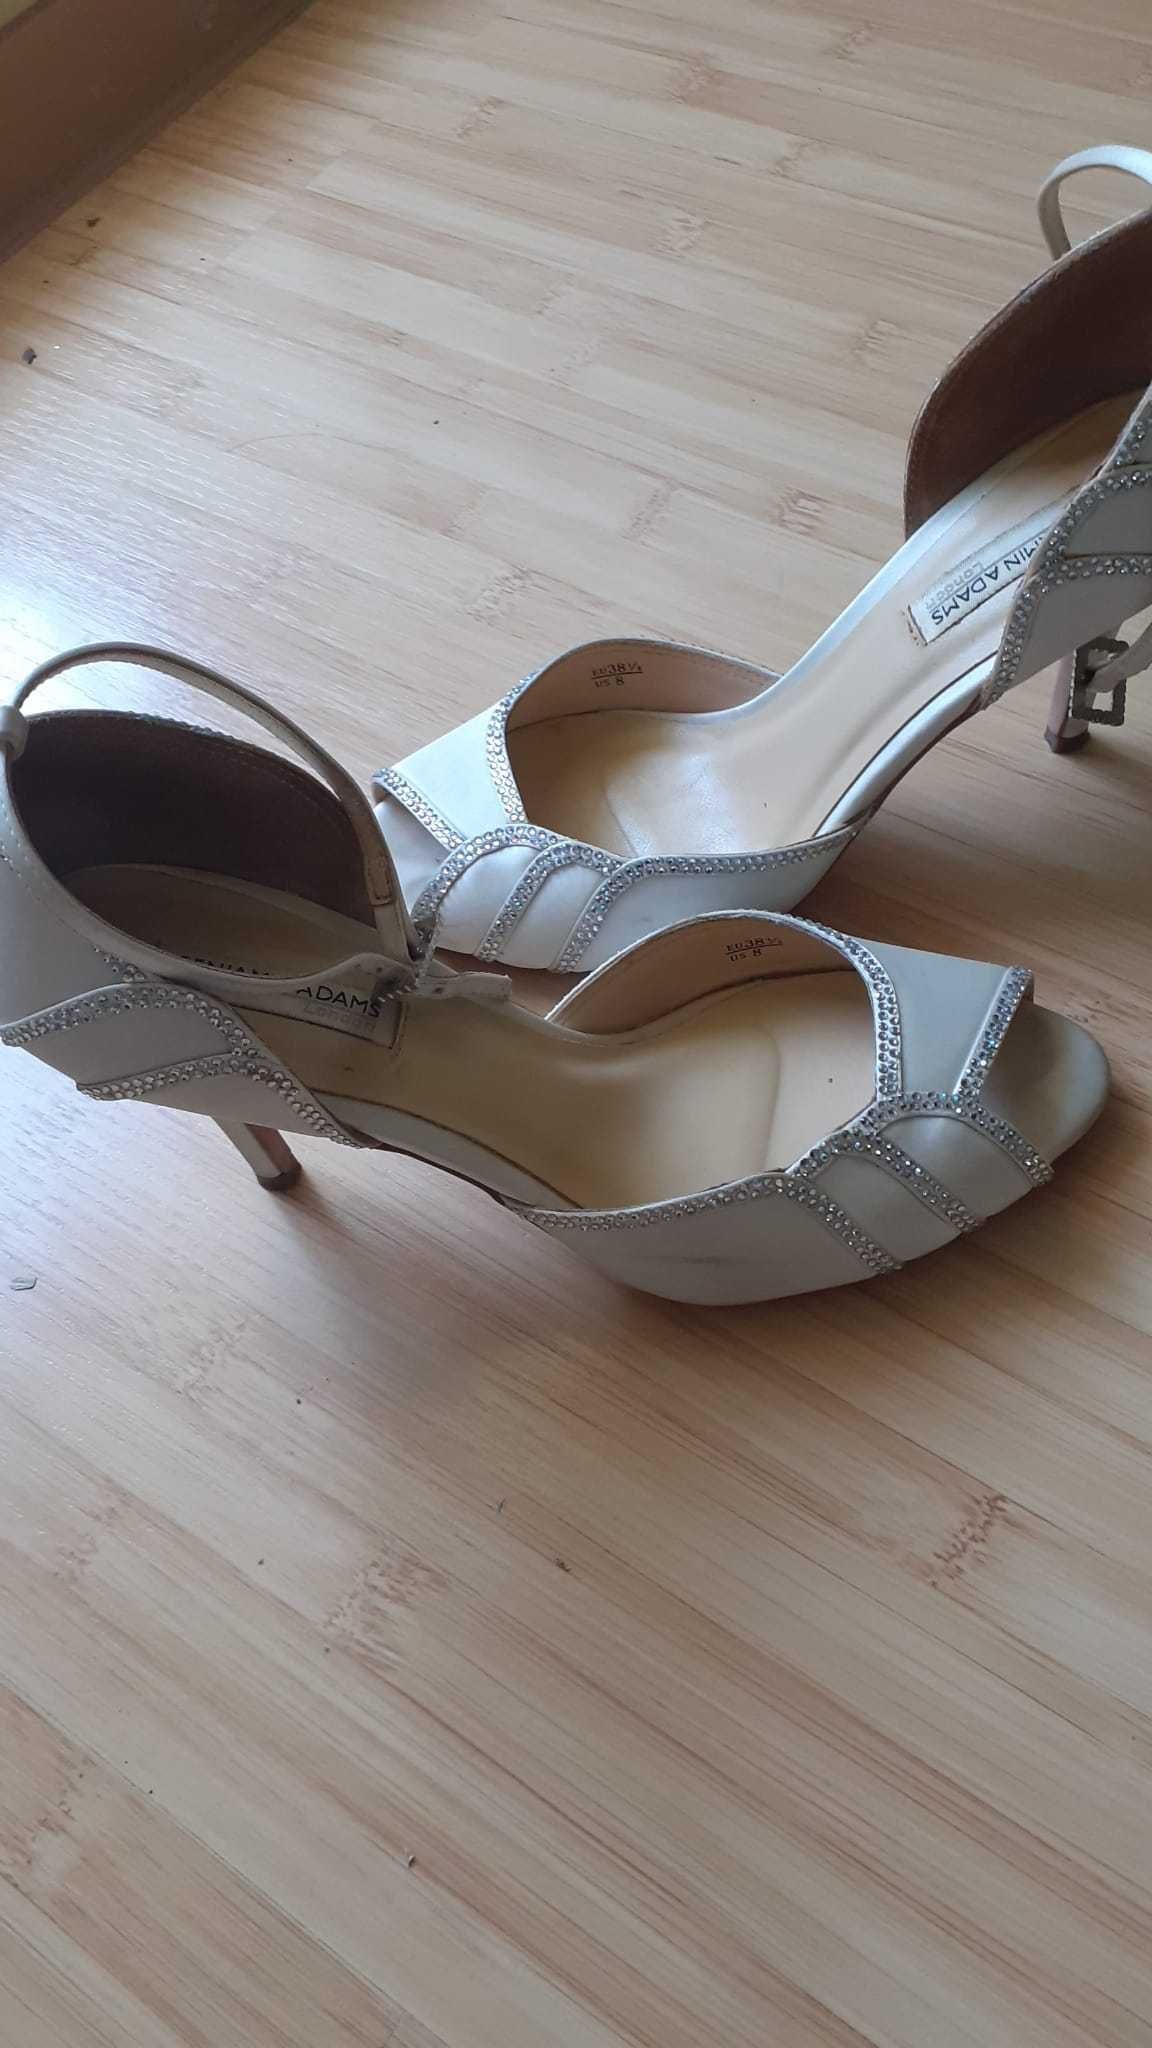 Sandale pentru nunta, eleganti, foarte comozi, marimea 38